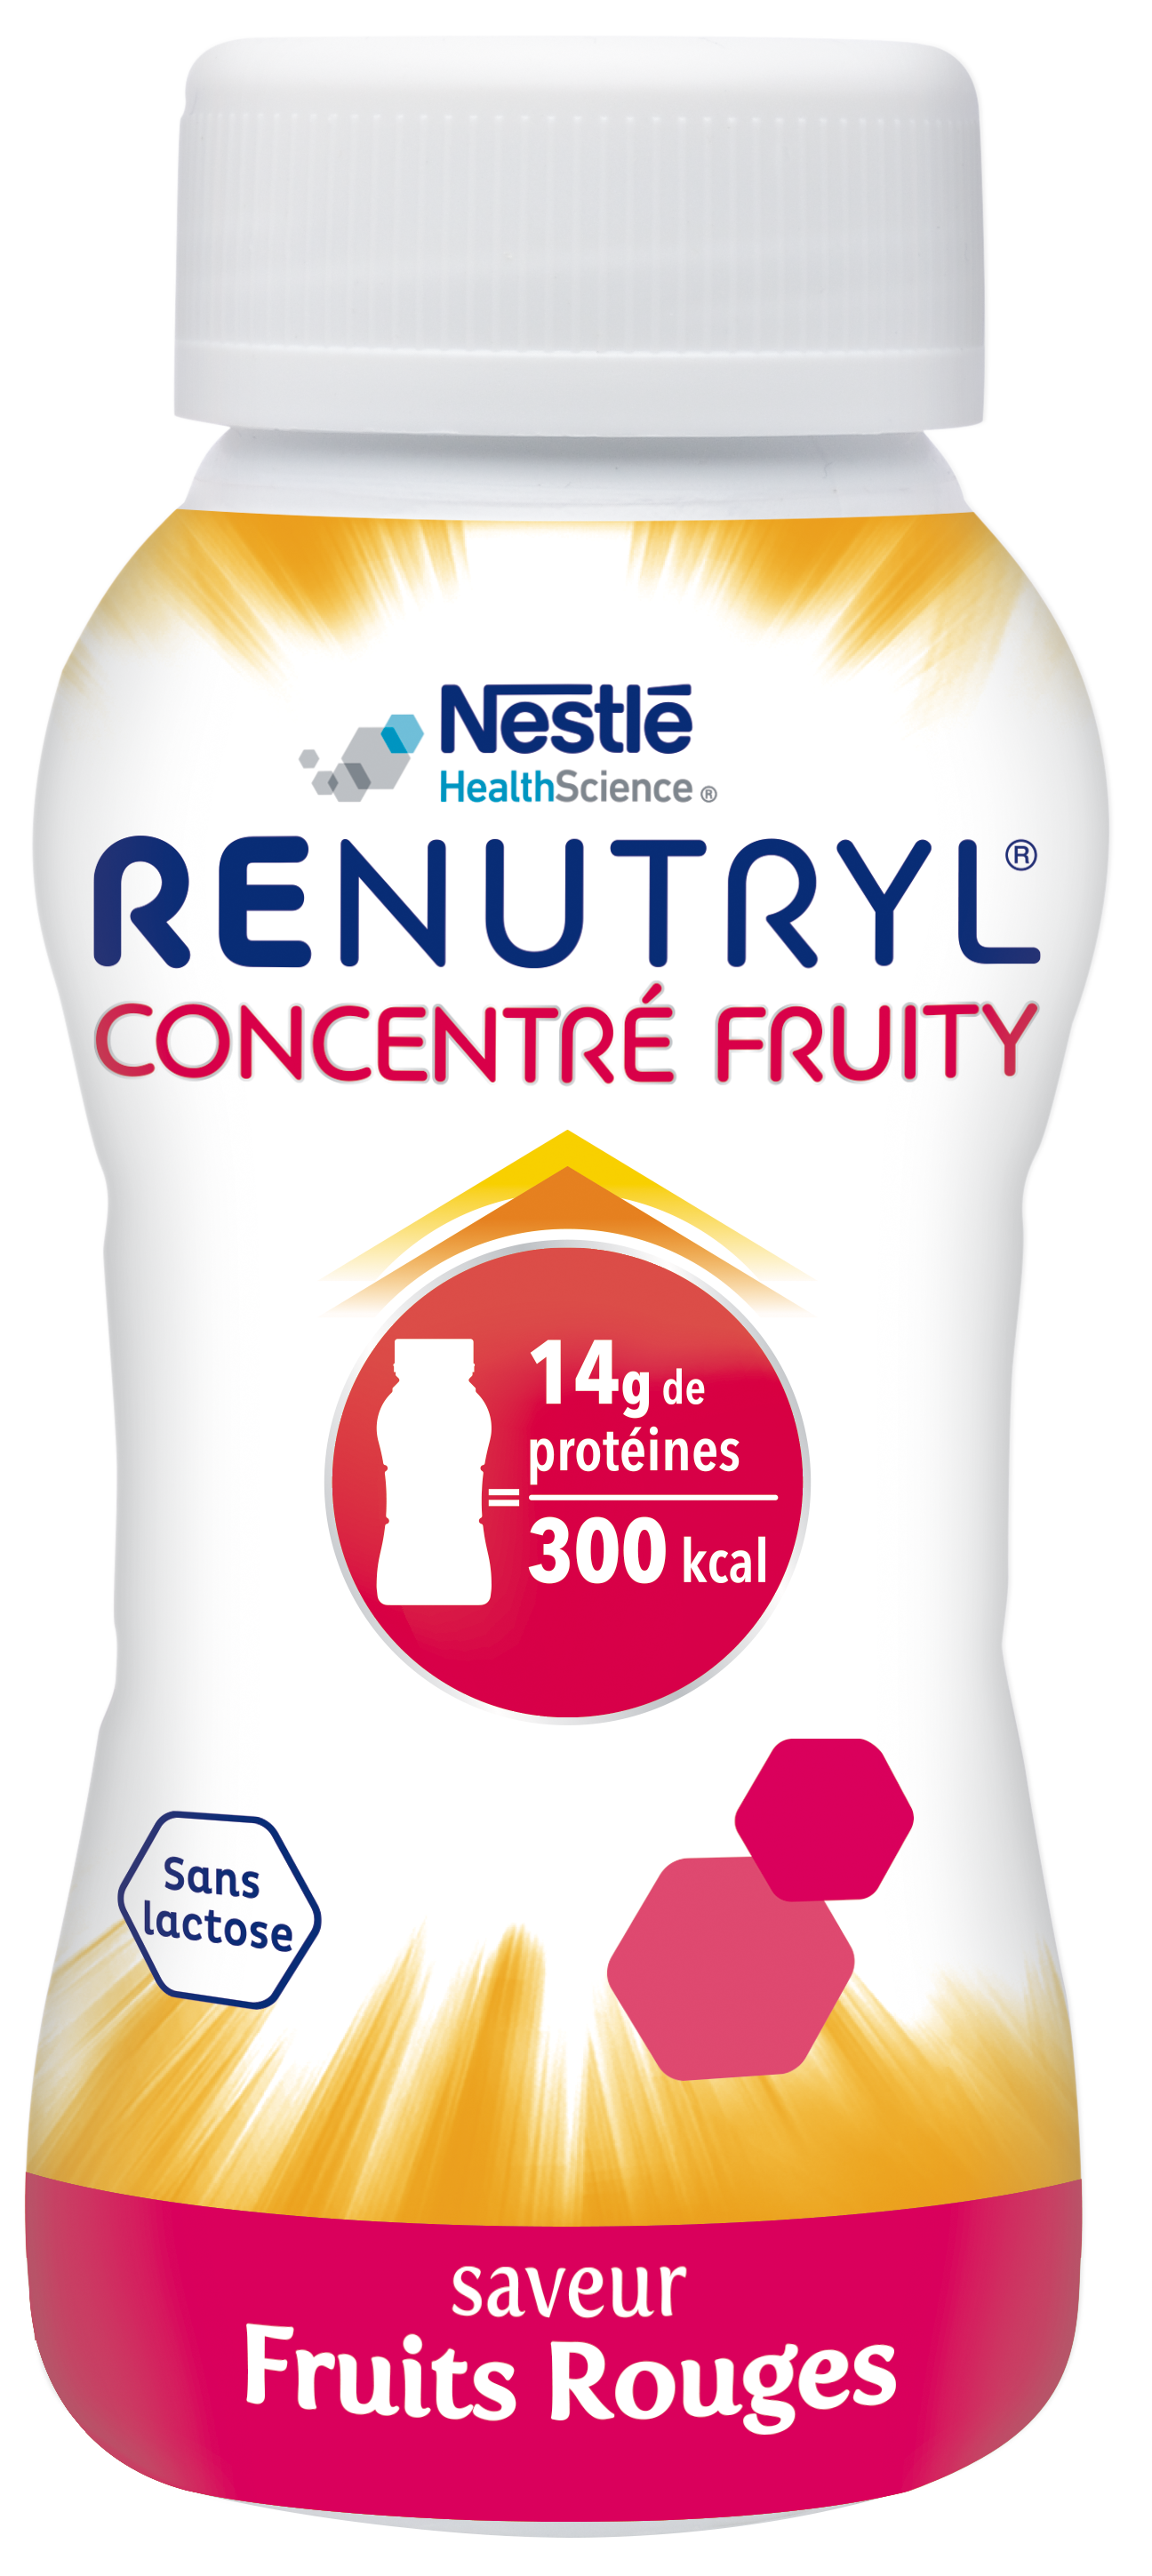 Renutryl Concentré Fruity